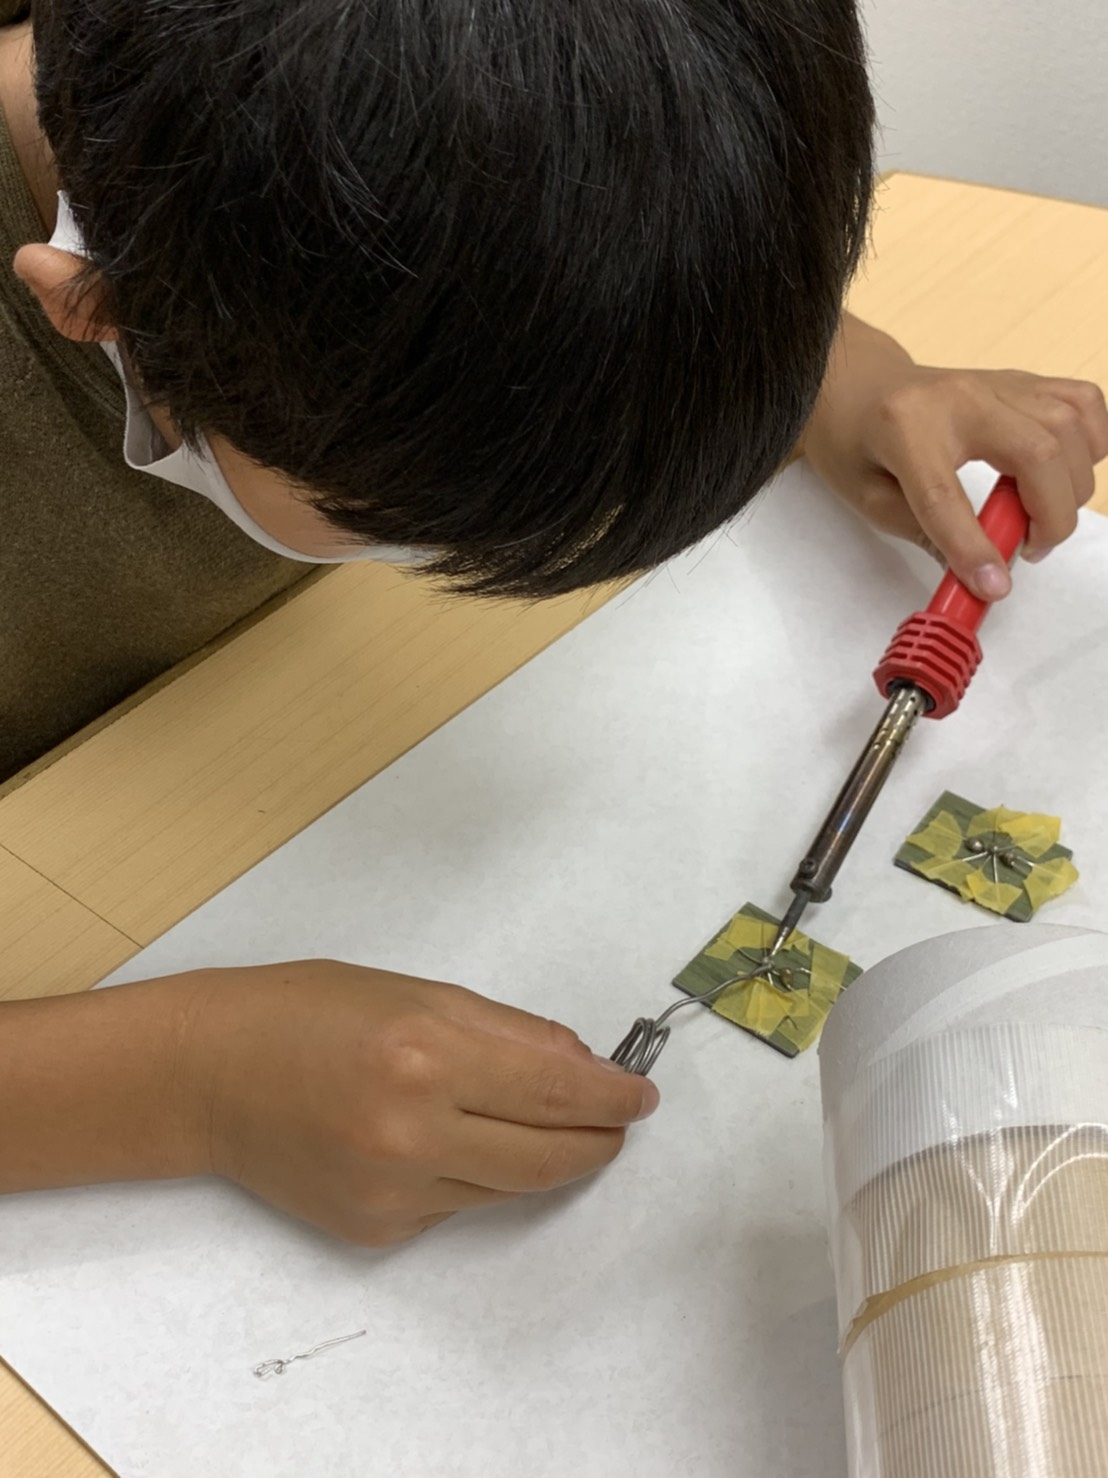 石田先生の「ハンダ」 | 実験湧わく教室 石田先生のブログ